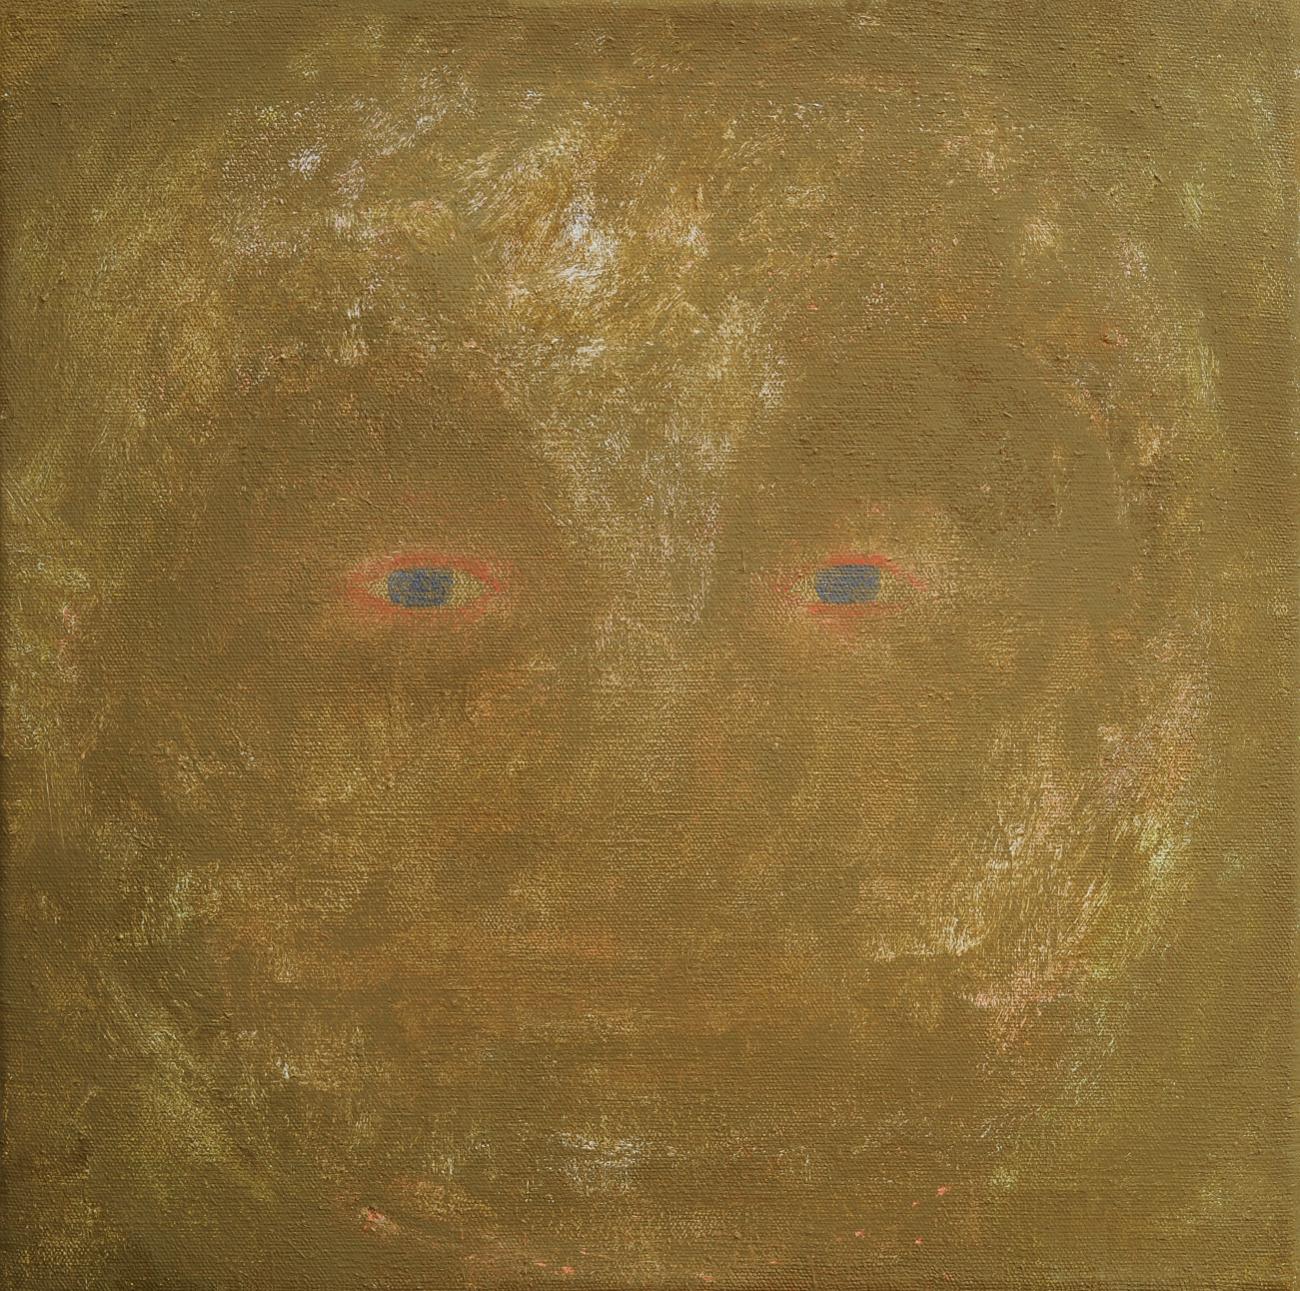 Jan Karpíšek: Head Over All, acryl on canvas, 50x50 cm, 2011